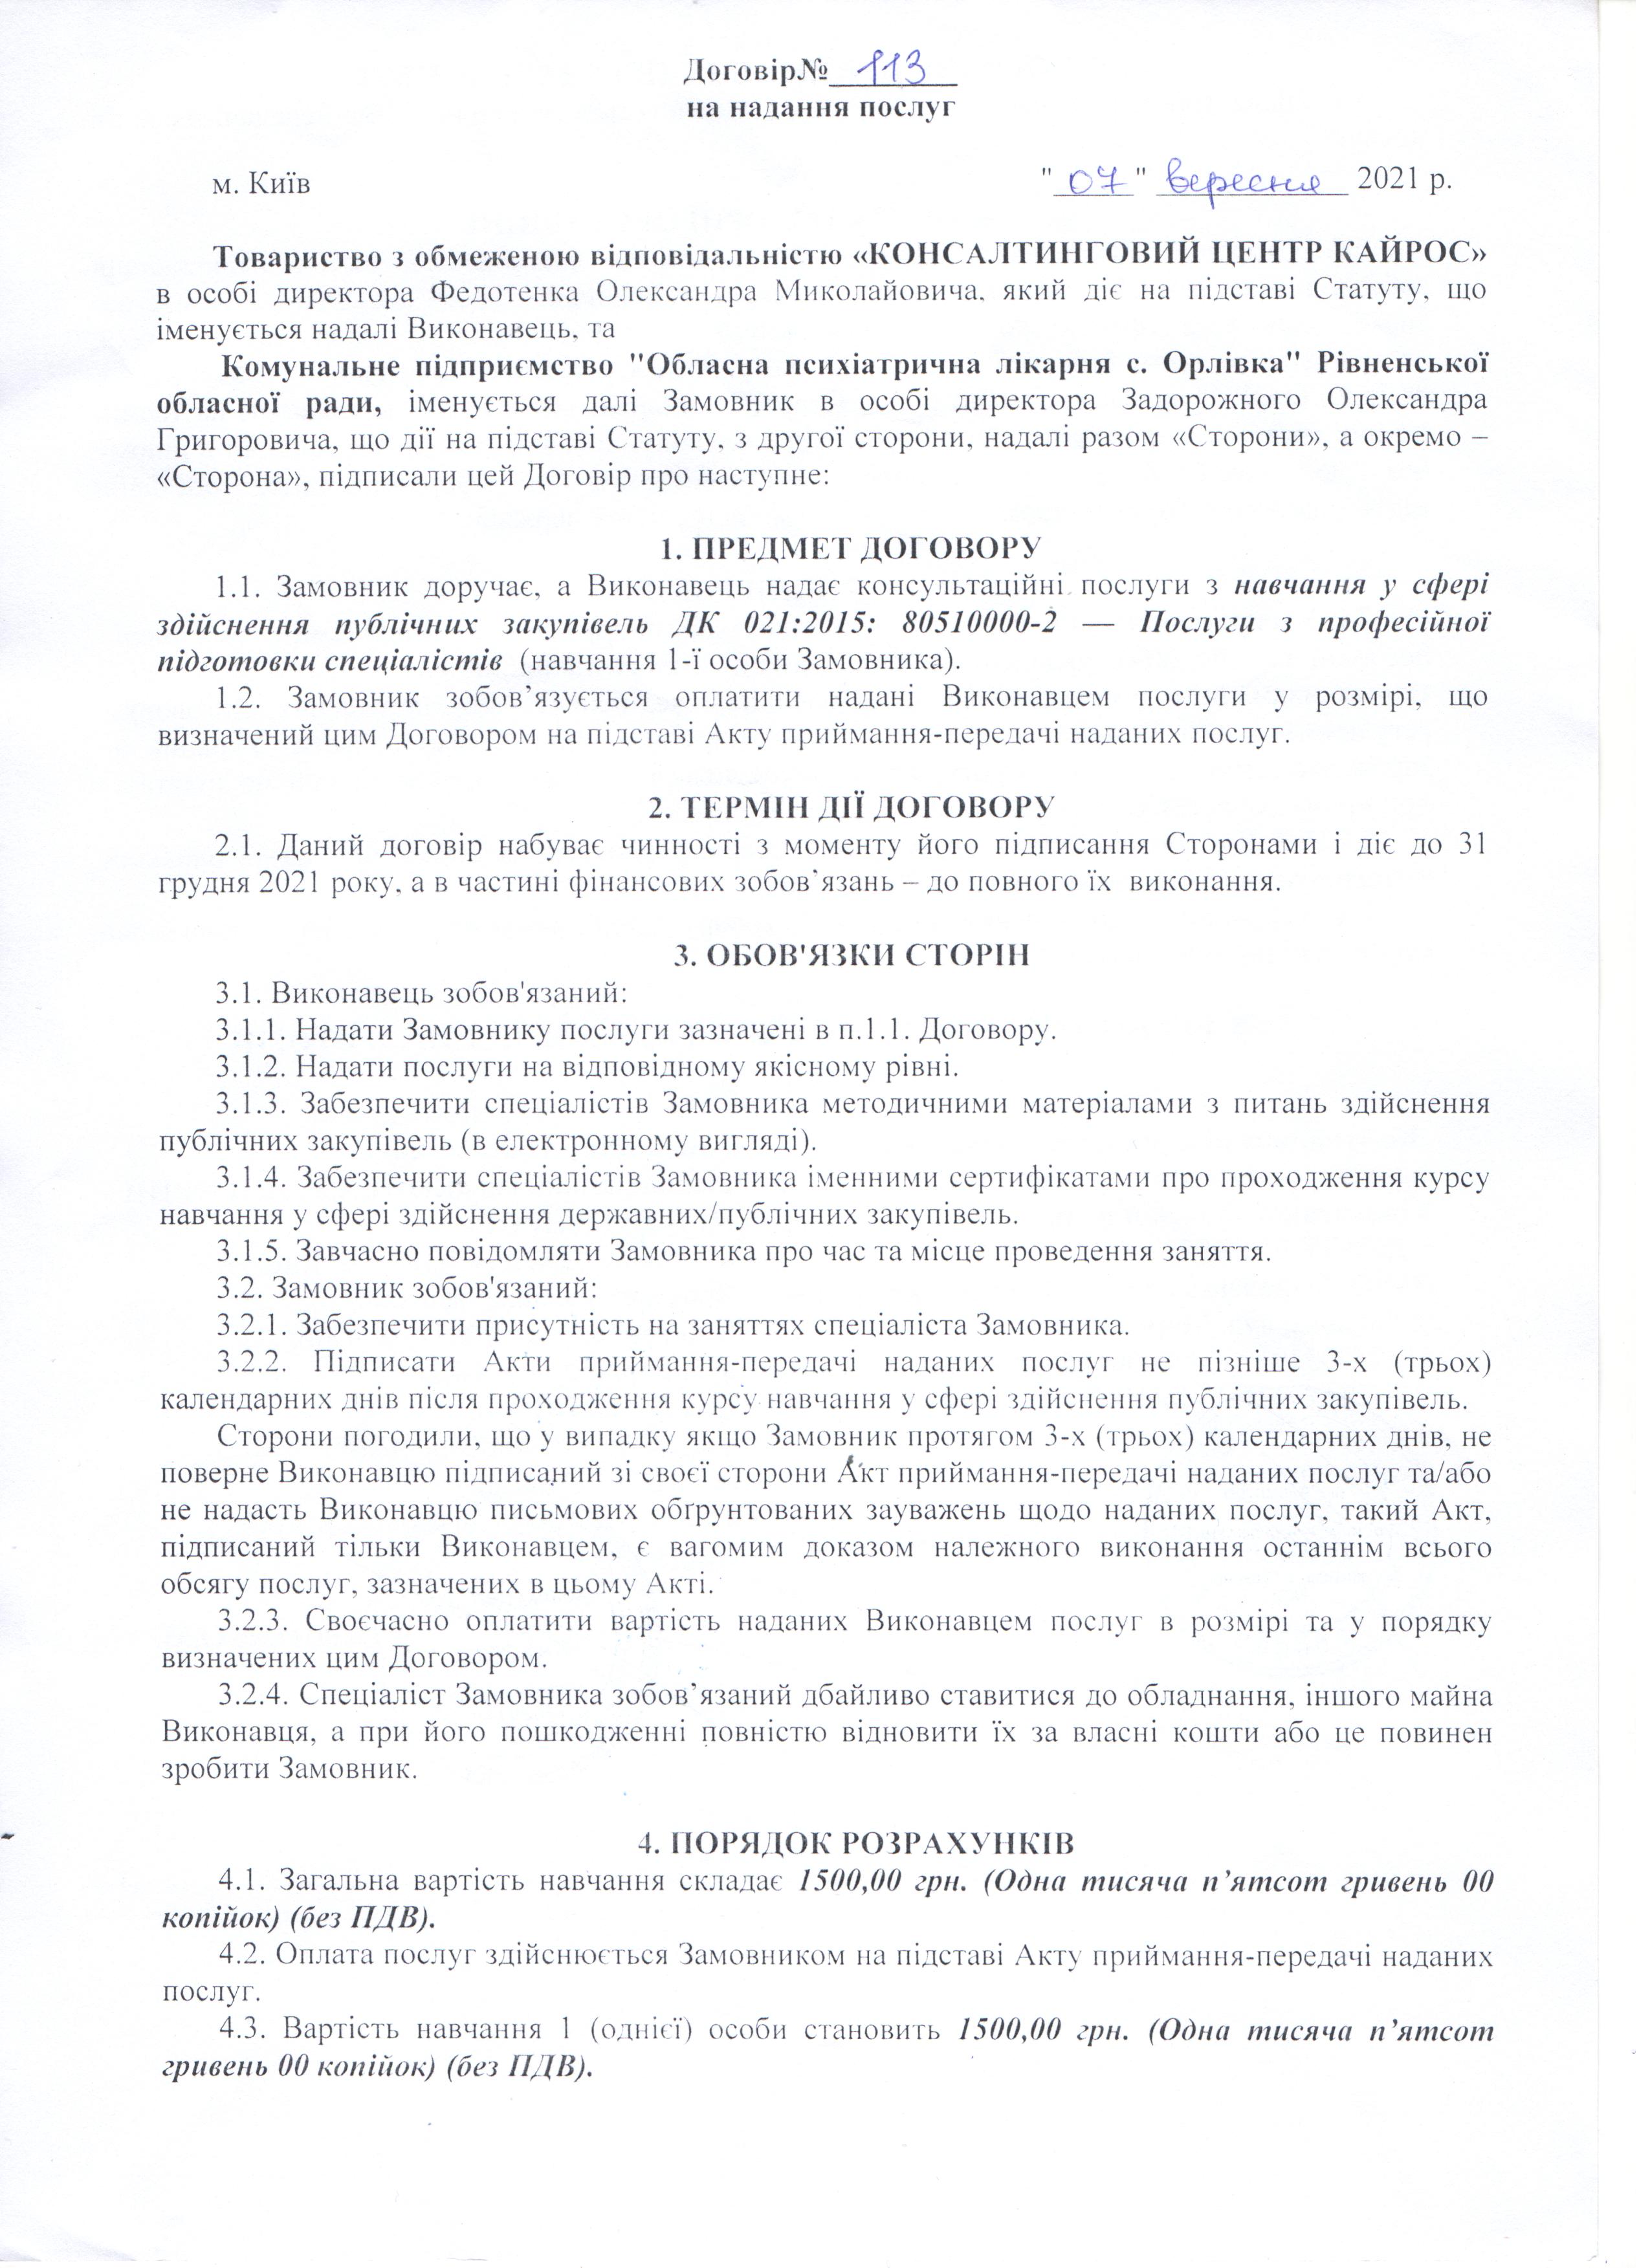 Договір №113 (1) від 07.09.2021 р.